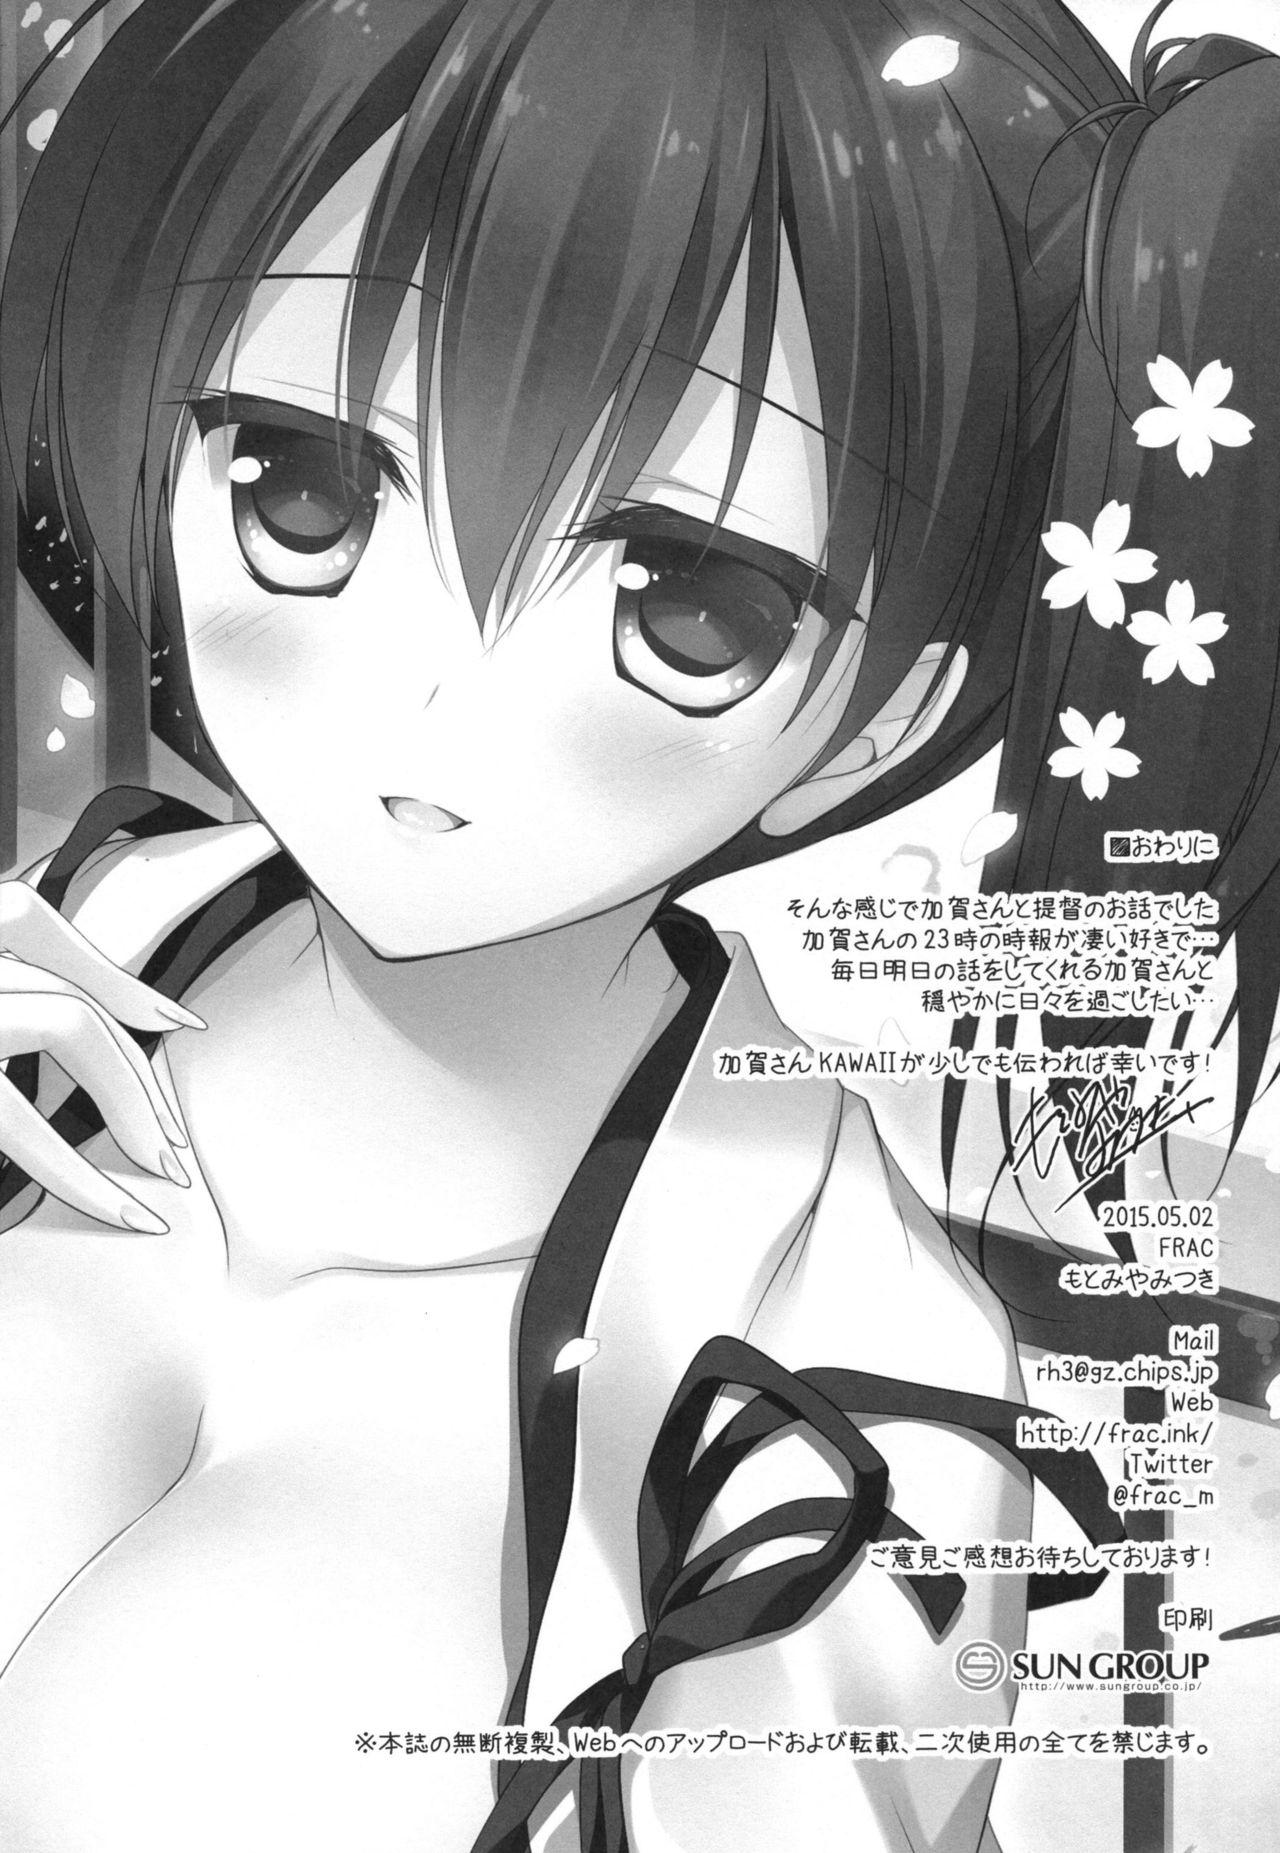 Porn Star Hibi kore koujitsu narite - Kantai collection Furry - Page 116